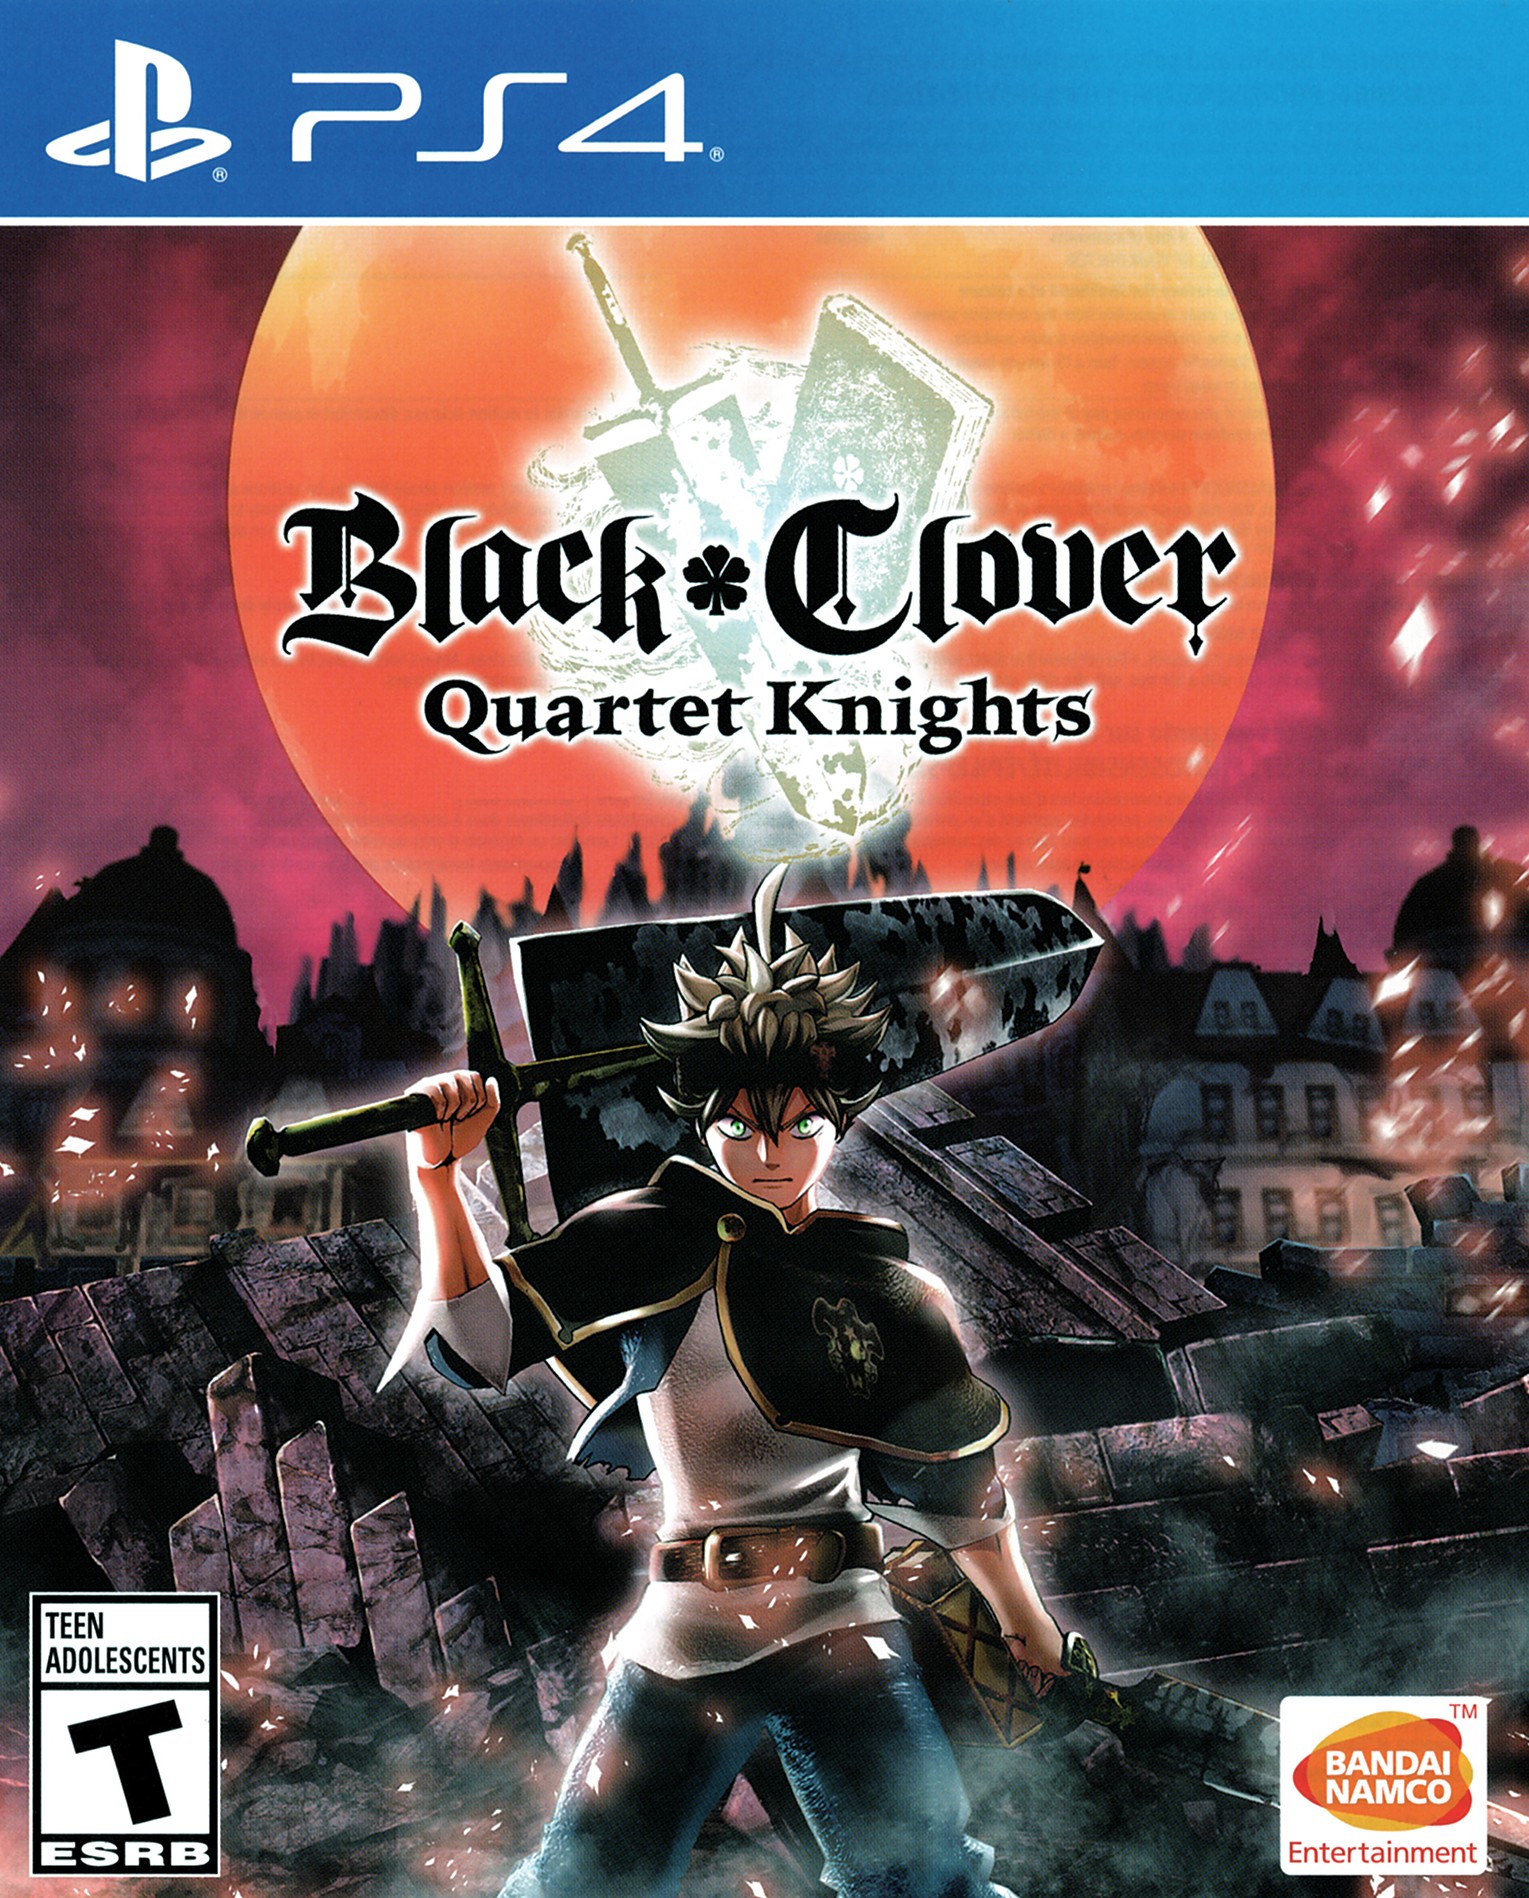 'Black Clover: Quartet Knights'